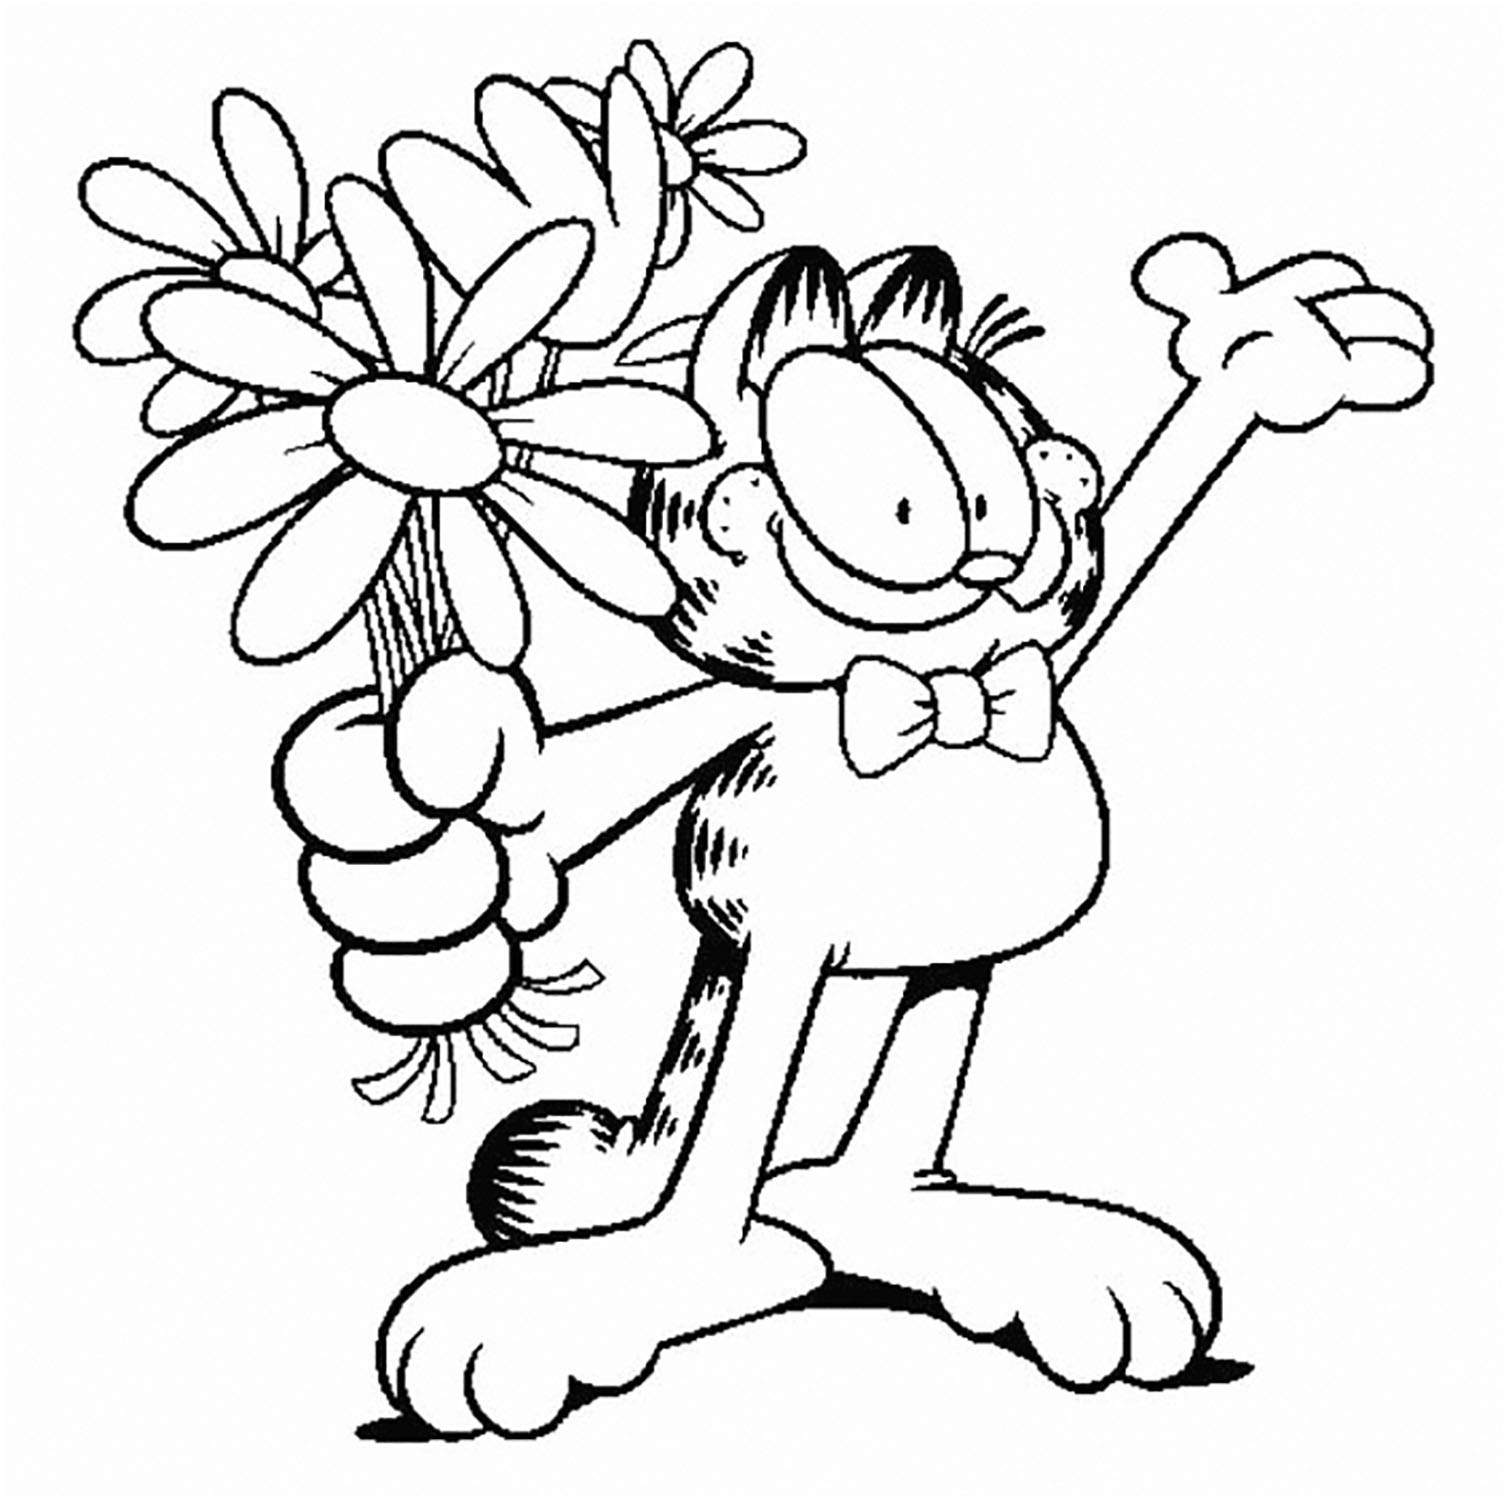 Image de Garfield à colorier, facile pour enfants